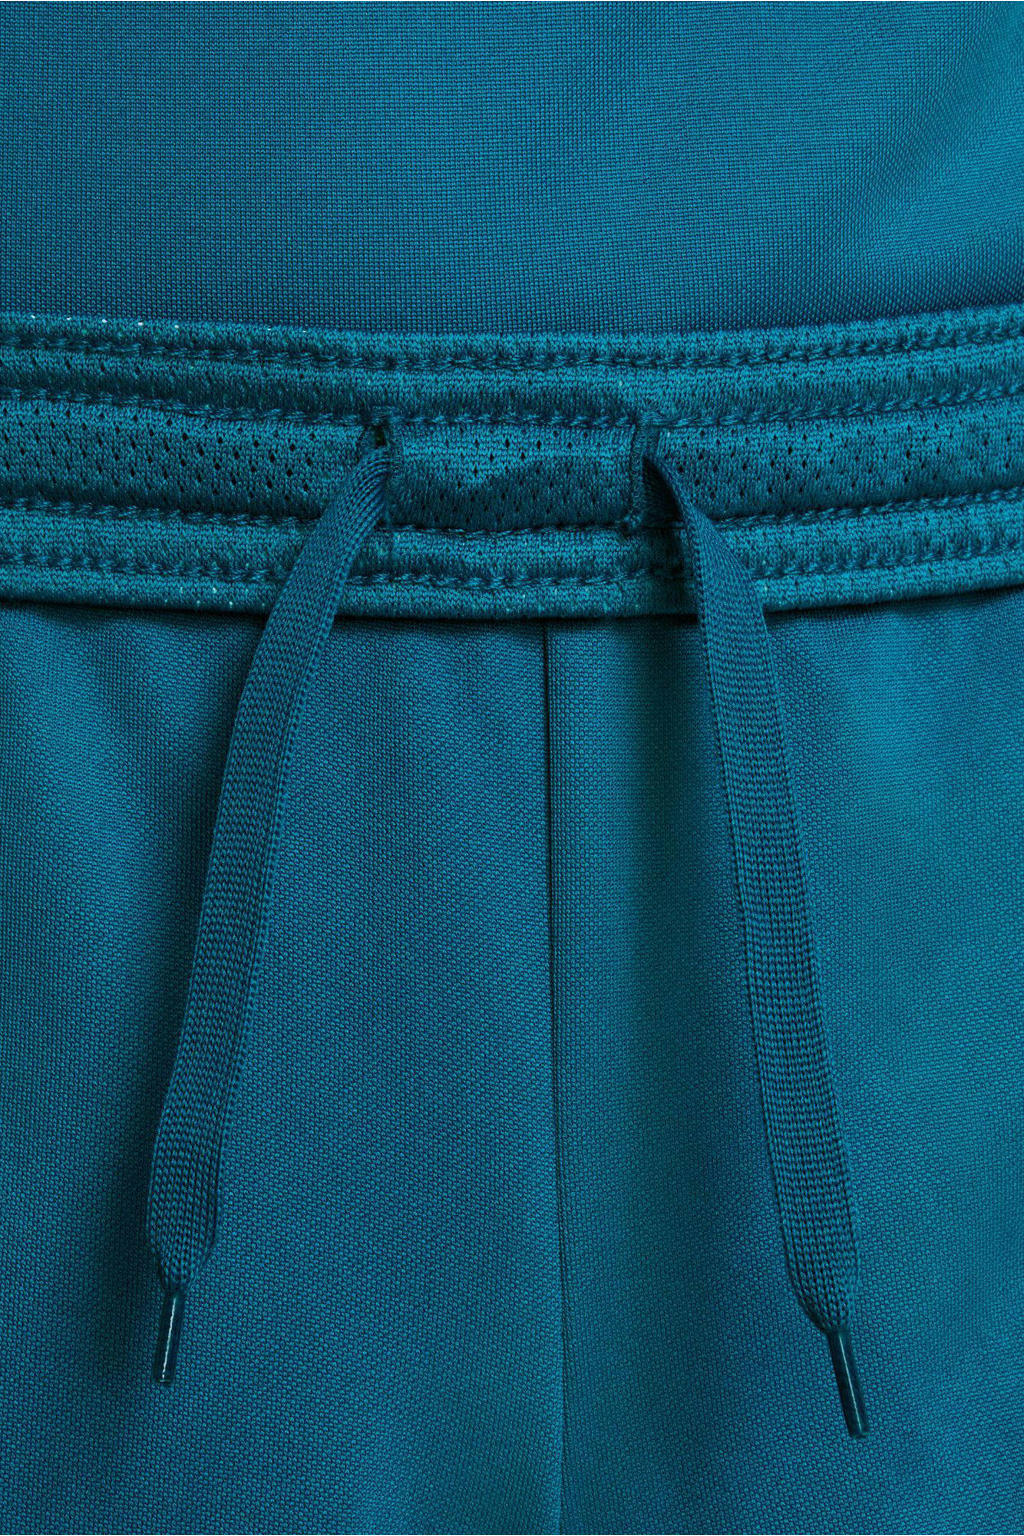 Blauwe jongens en meisjes Nike sportshort van polyester met regular fit, regular waist en elastische tailleband met koord